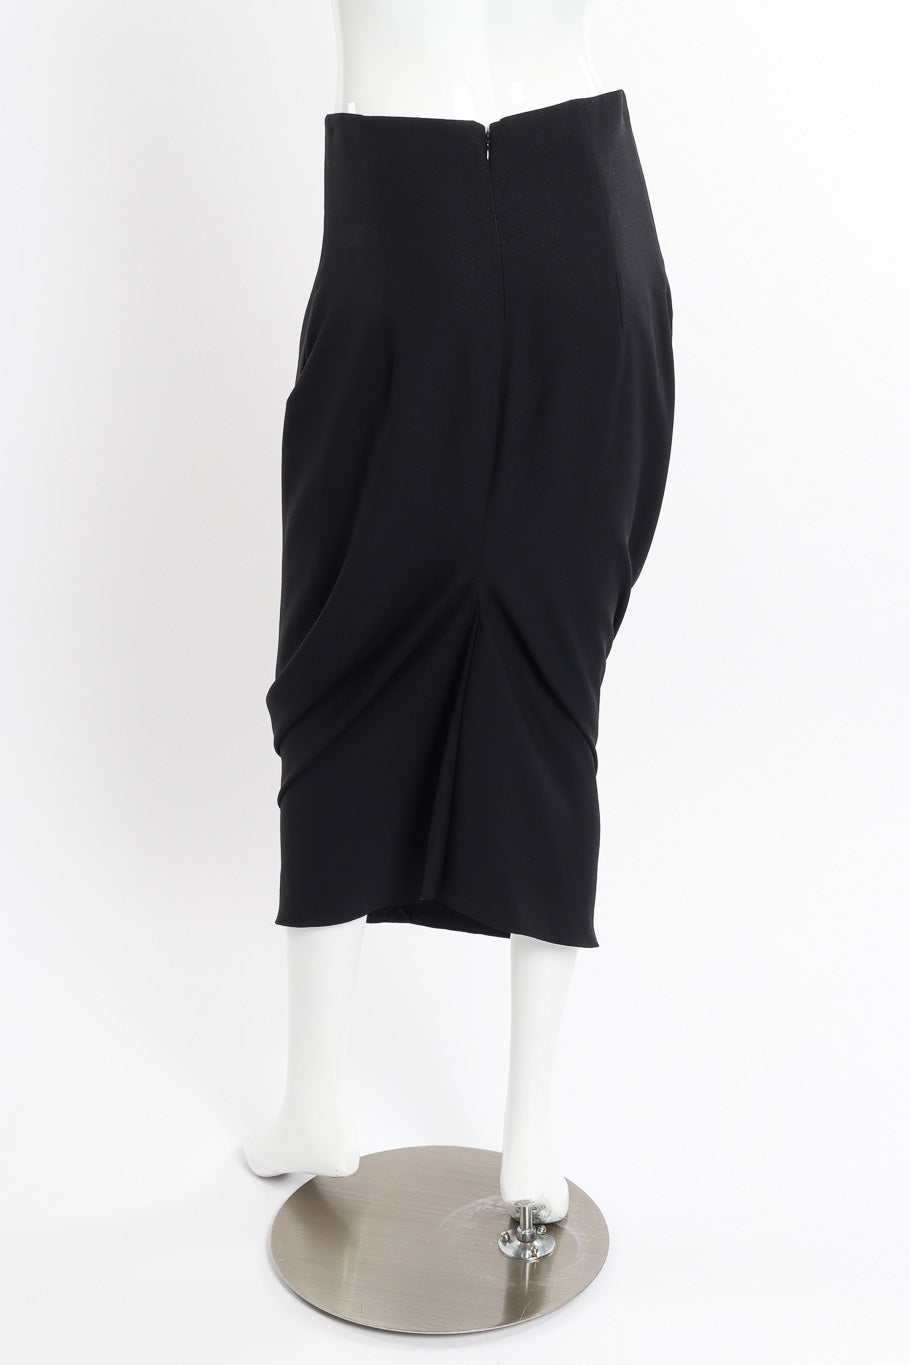 Vintage John Galliano 1999 S/S Draped Skirt back on mannequin @recessla